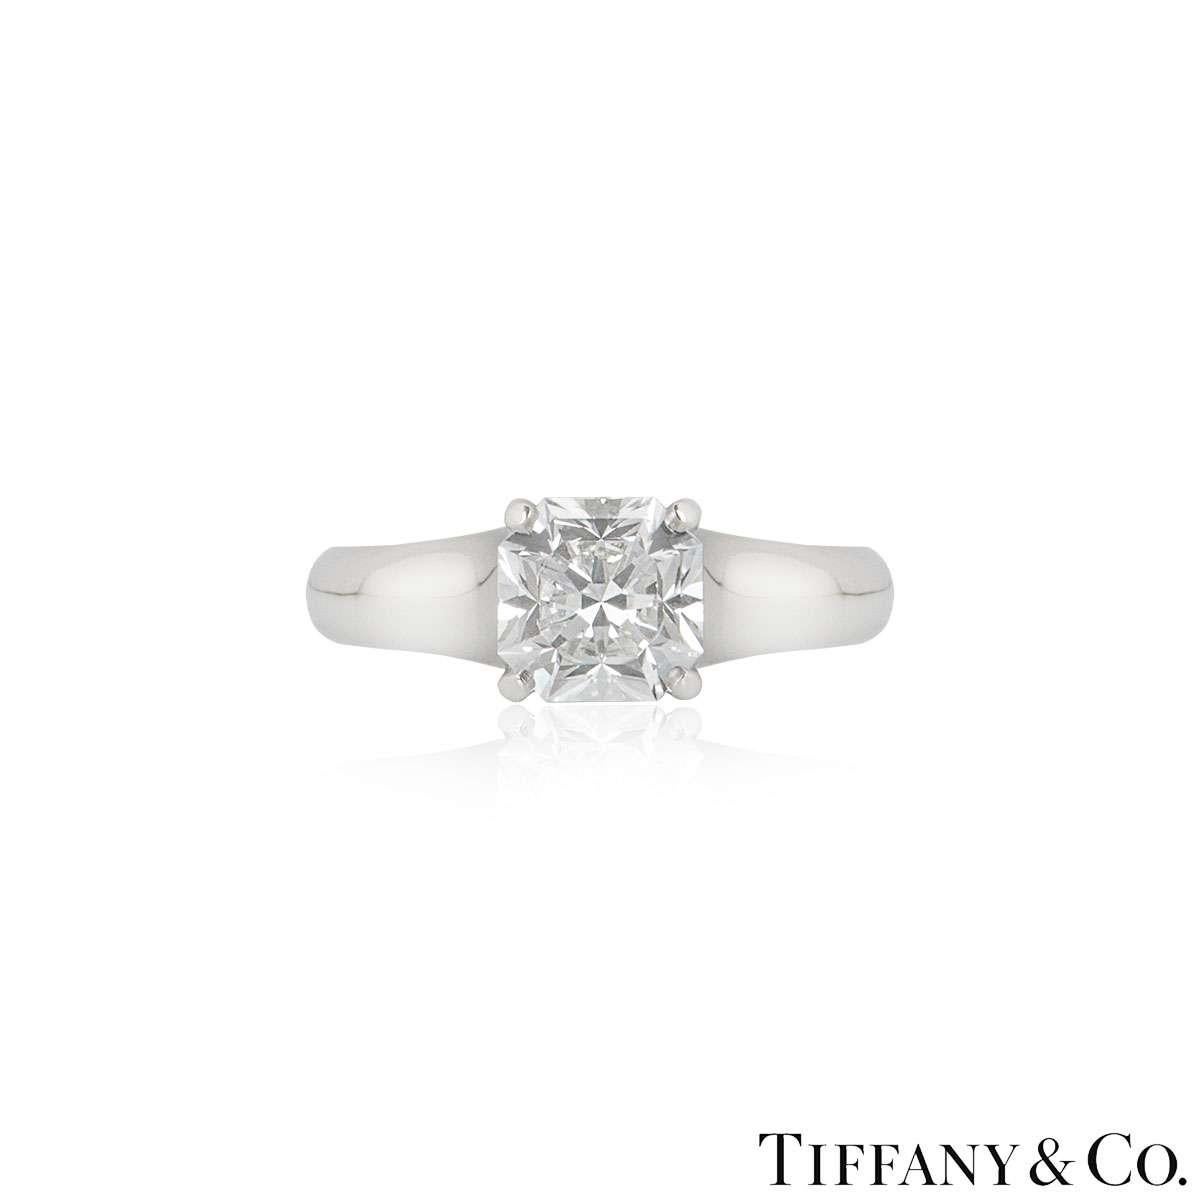 Ein atemberaubender Platin-Diamantring von Tiffany & Co. aus der Collection'S Lucida. Der Ring besteht aus einem Diamanten im Lucida-Schliff in einer 4-Krallen-Fassung mit einem Gewicht von 1,27ct, Farbe E und Reinheit VS1. Der Ring hat die Größe UK